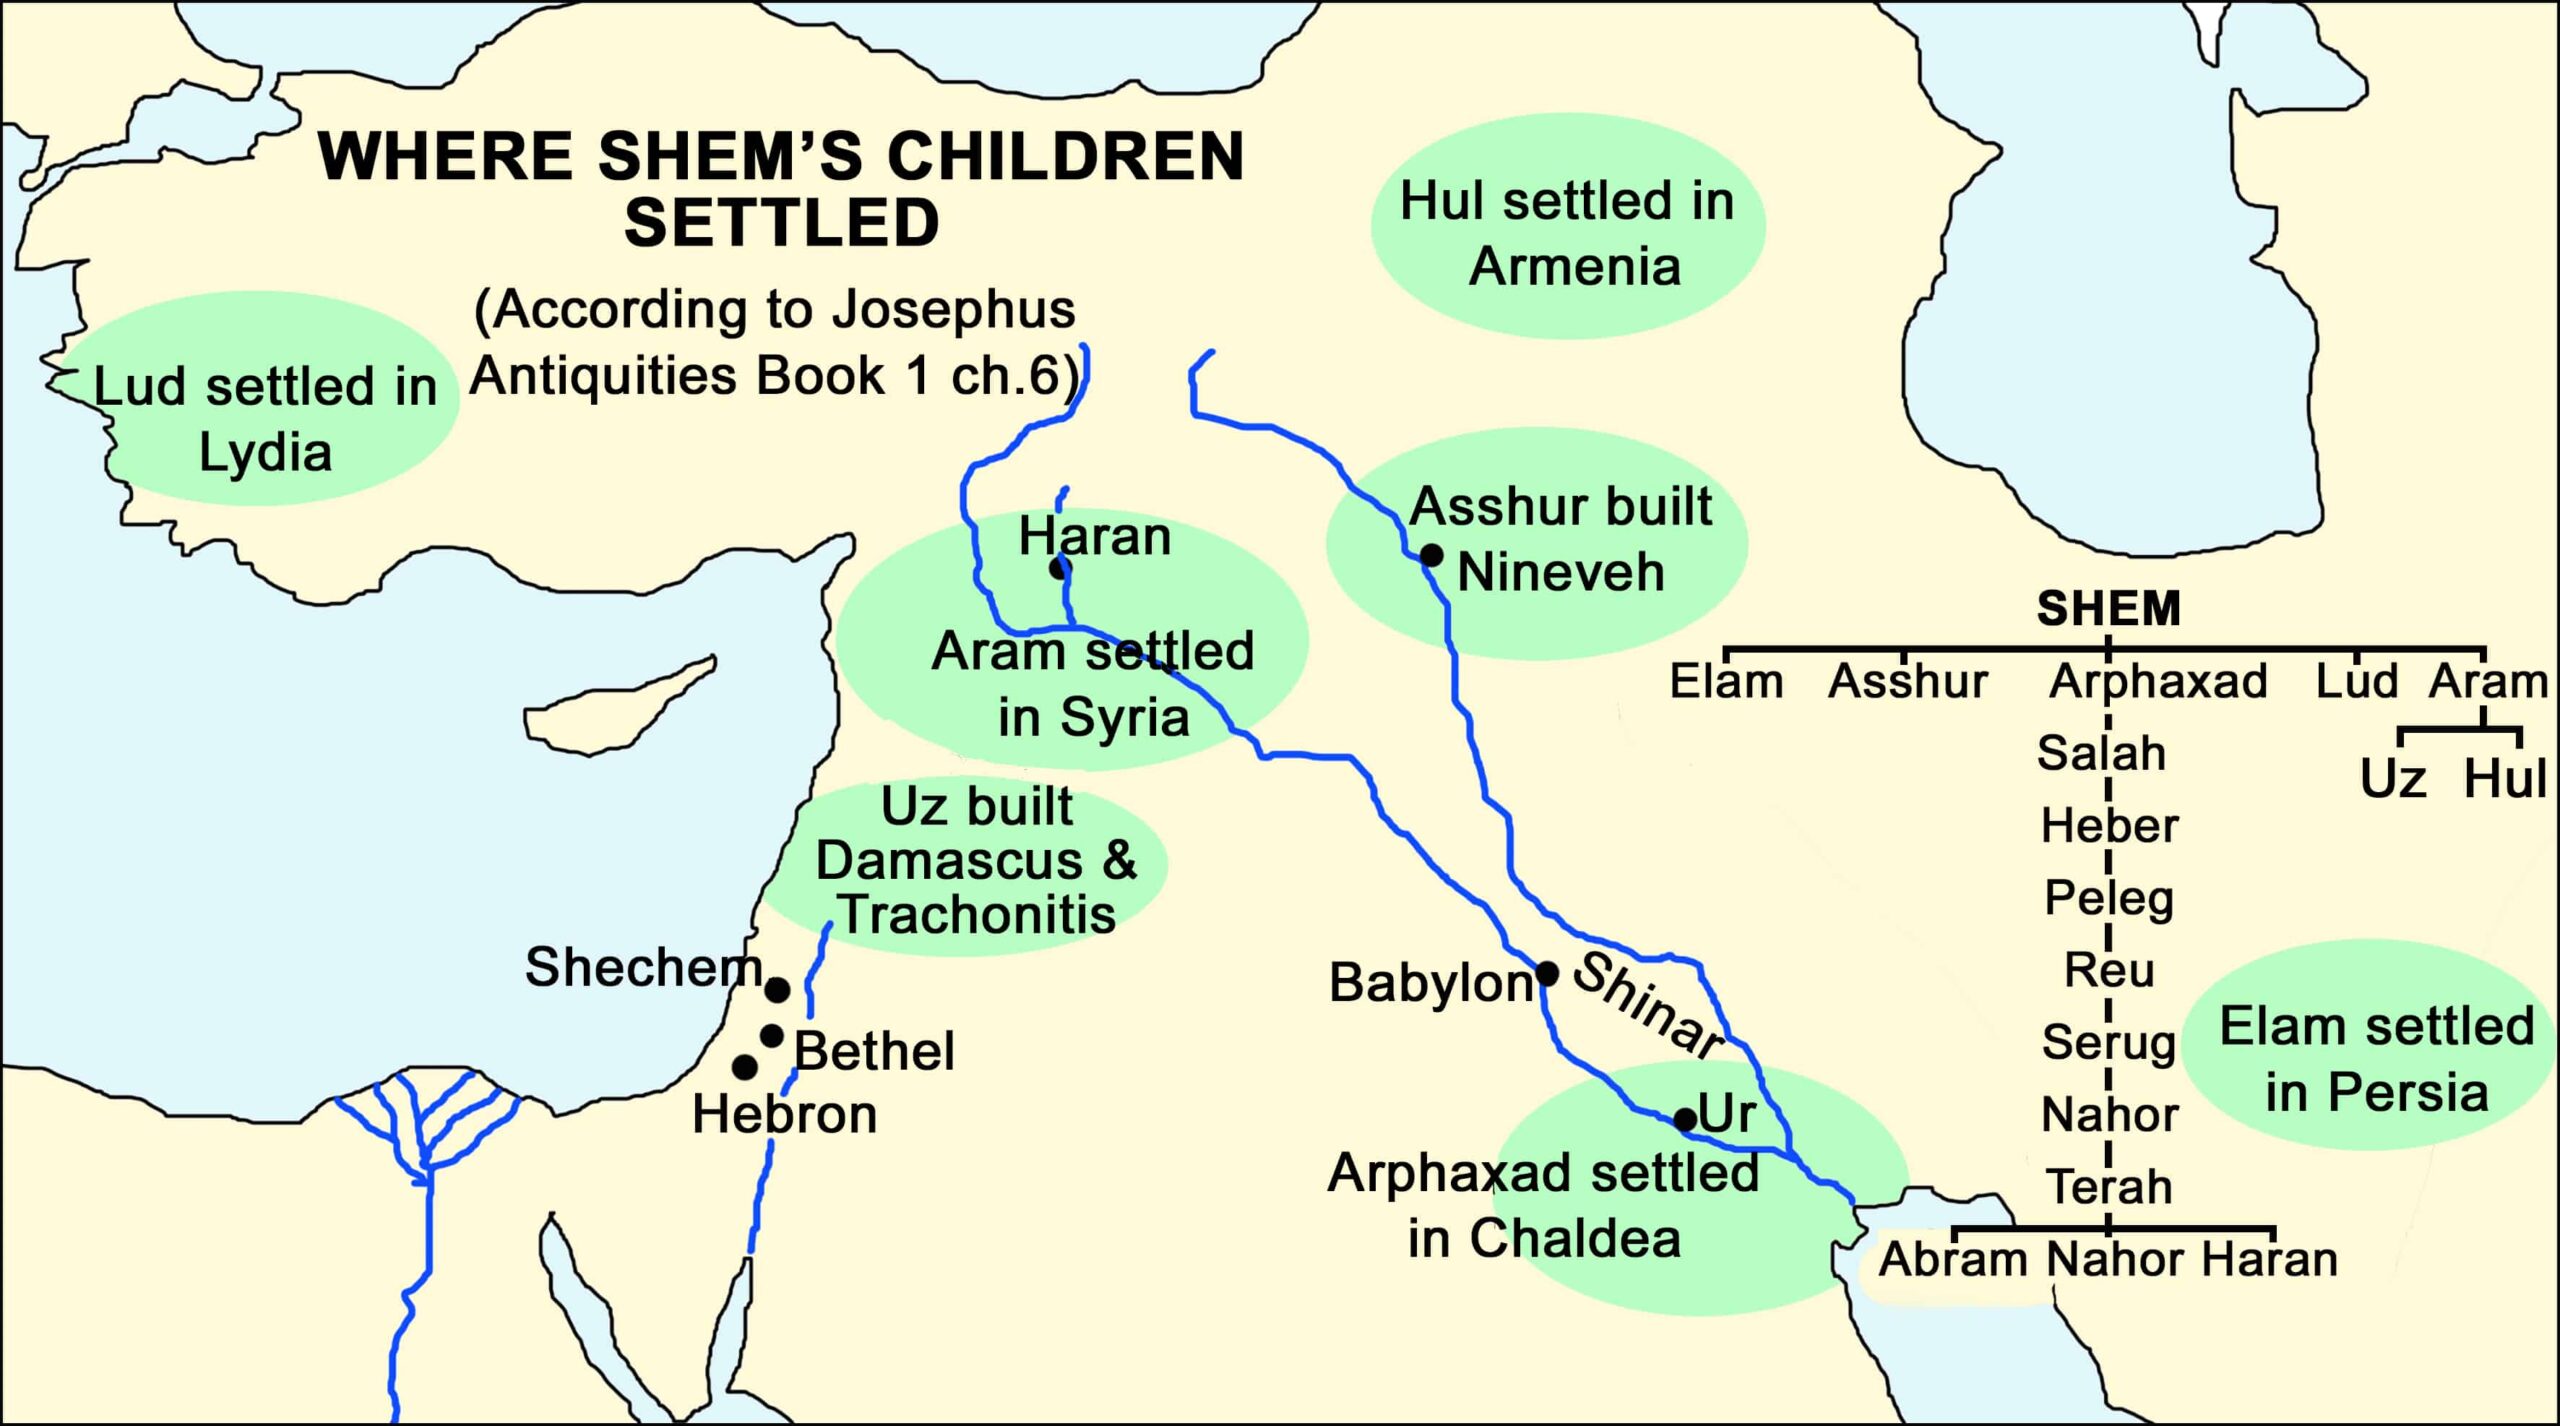 WHERE THE CHILDREN OF SHEM SETTLED